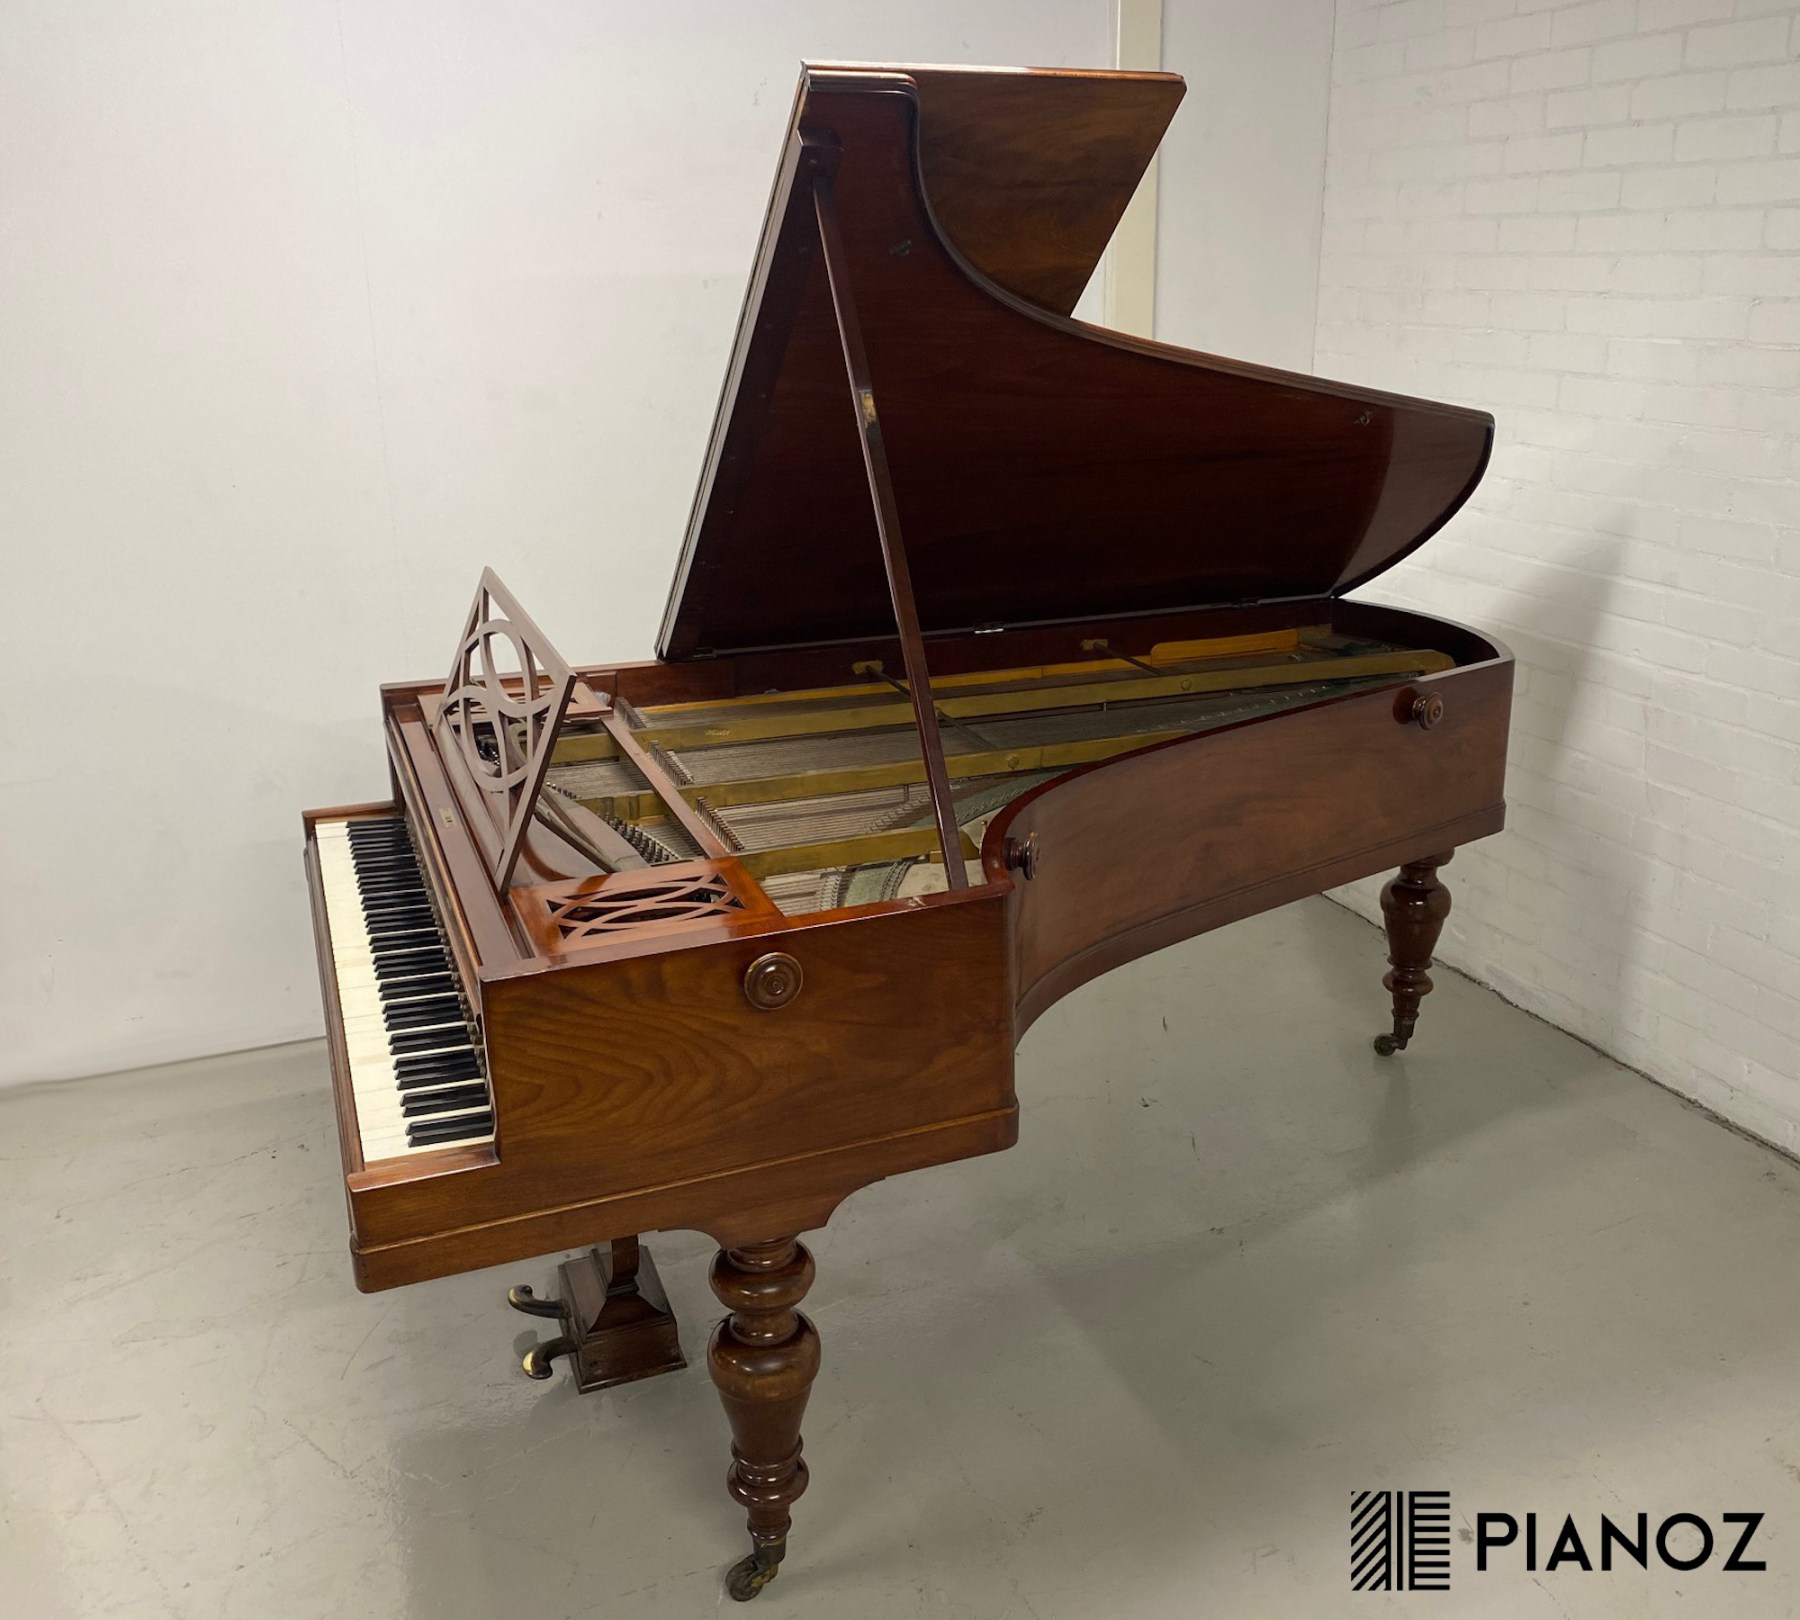 Pleyel Historic Grand Piano piano for sale in UK